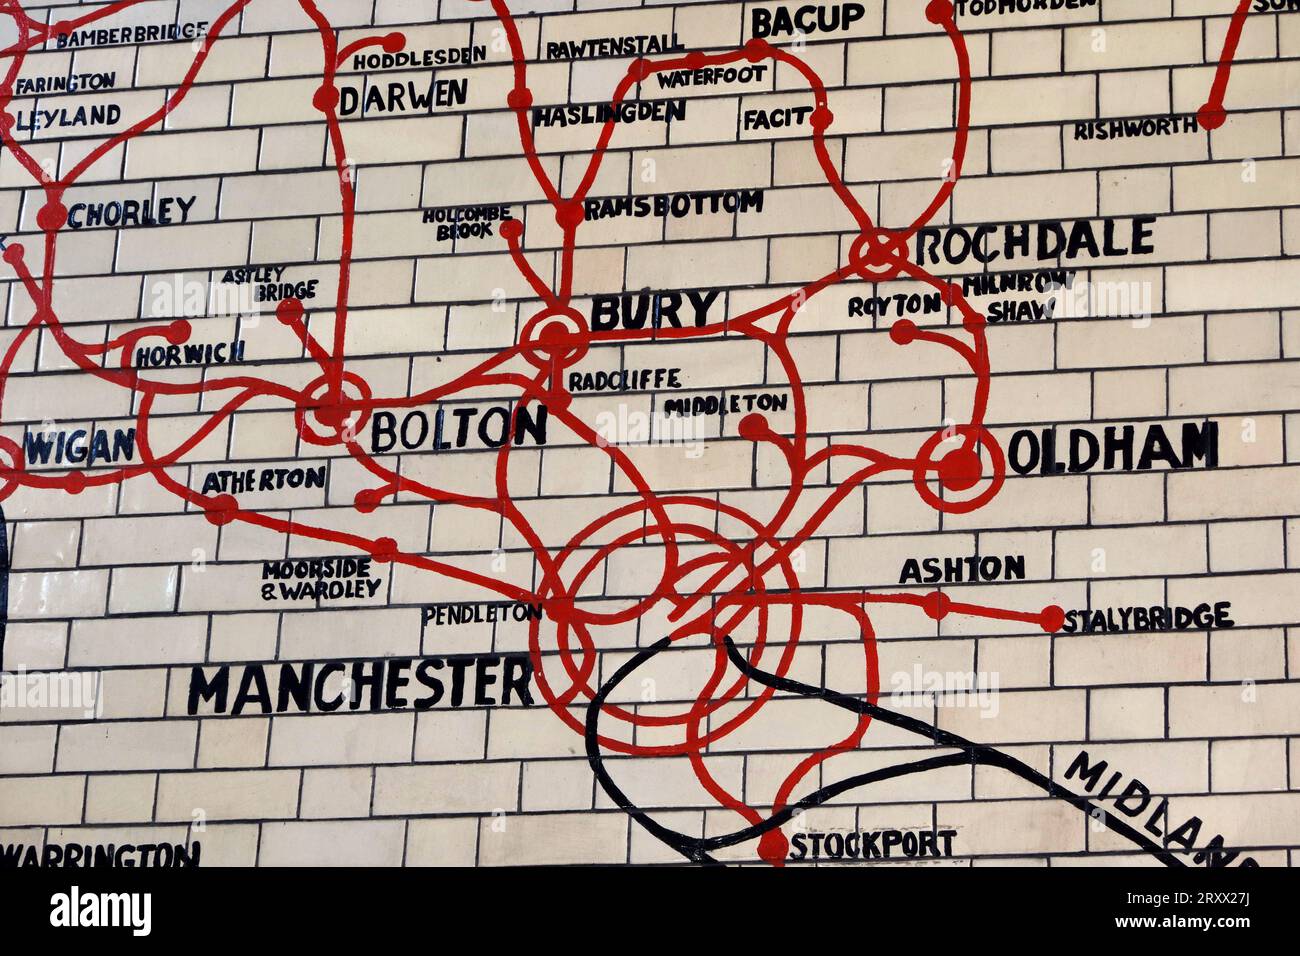 Carte des chemins de fer victoriens de Manchester, Victoria Station Approach, Manchester, Angleterre, Royaume-Uni, M3 1WY Banque D'Images